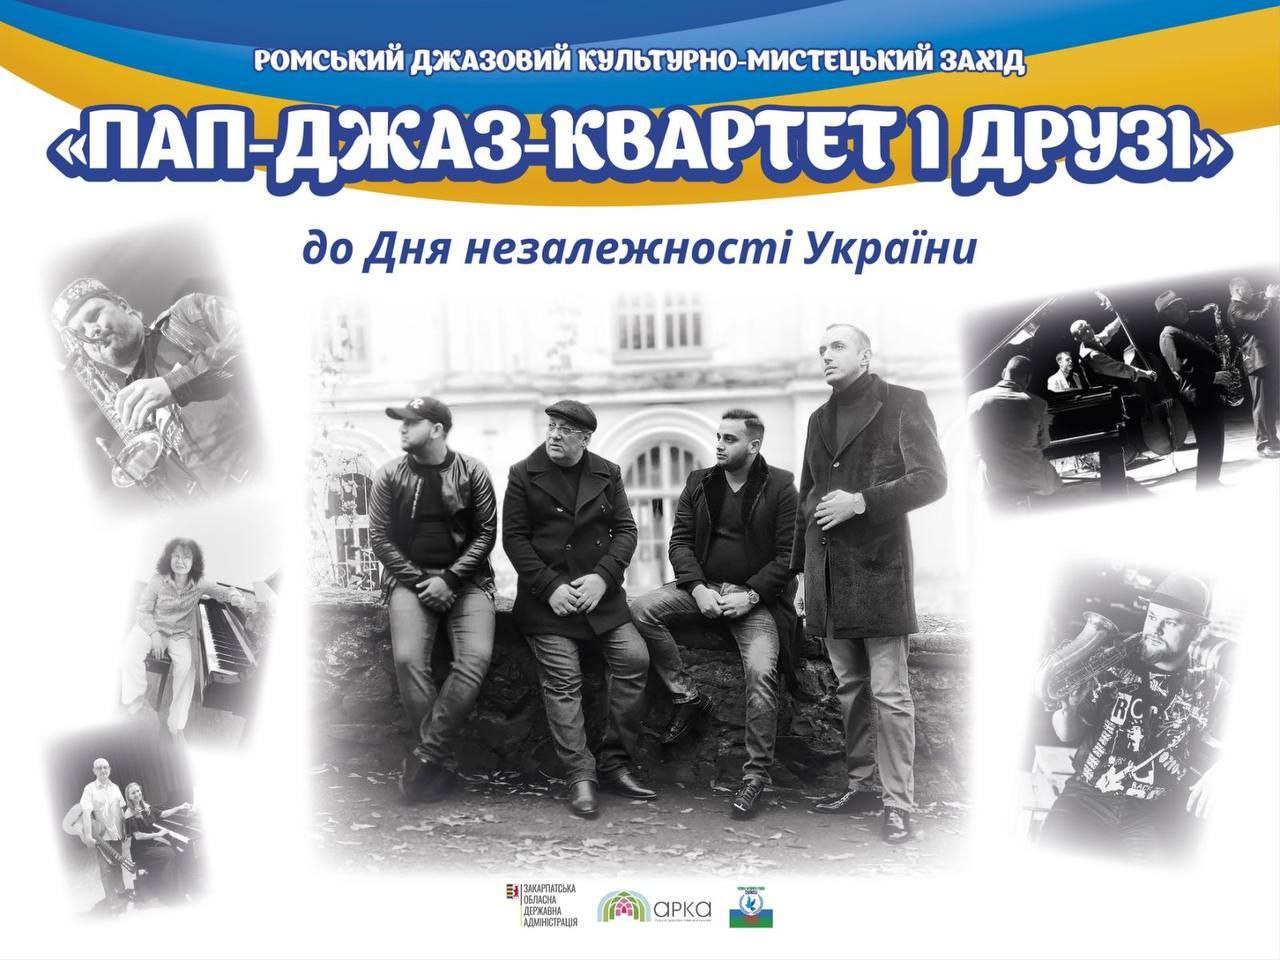 В Ужгороді відбудеться концерт "Пап-джаз-квартет і друзі" на підтримку ЗСУ